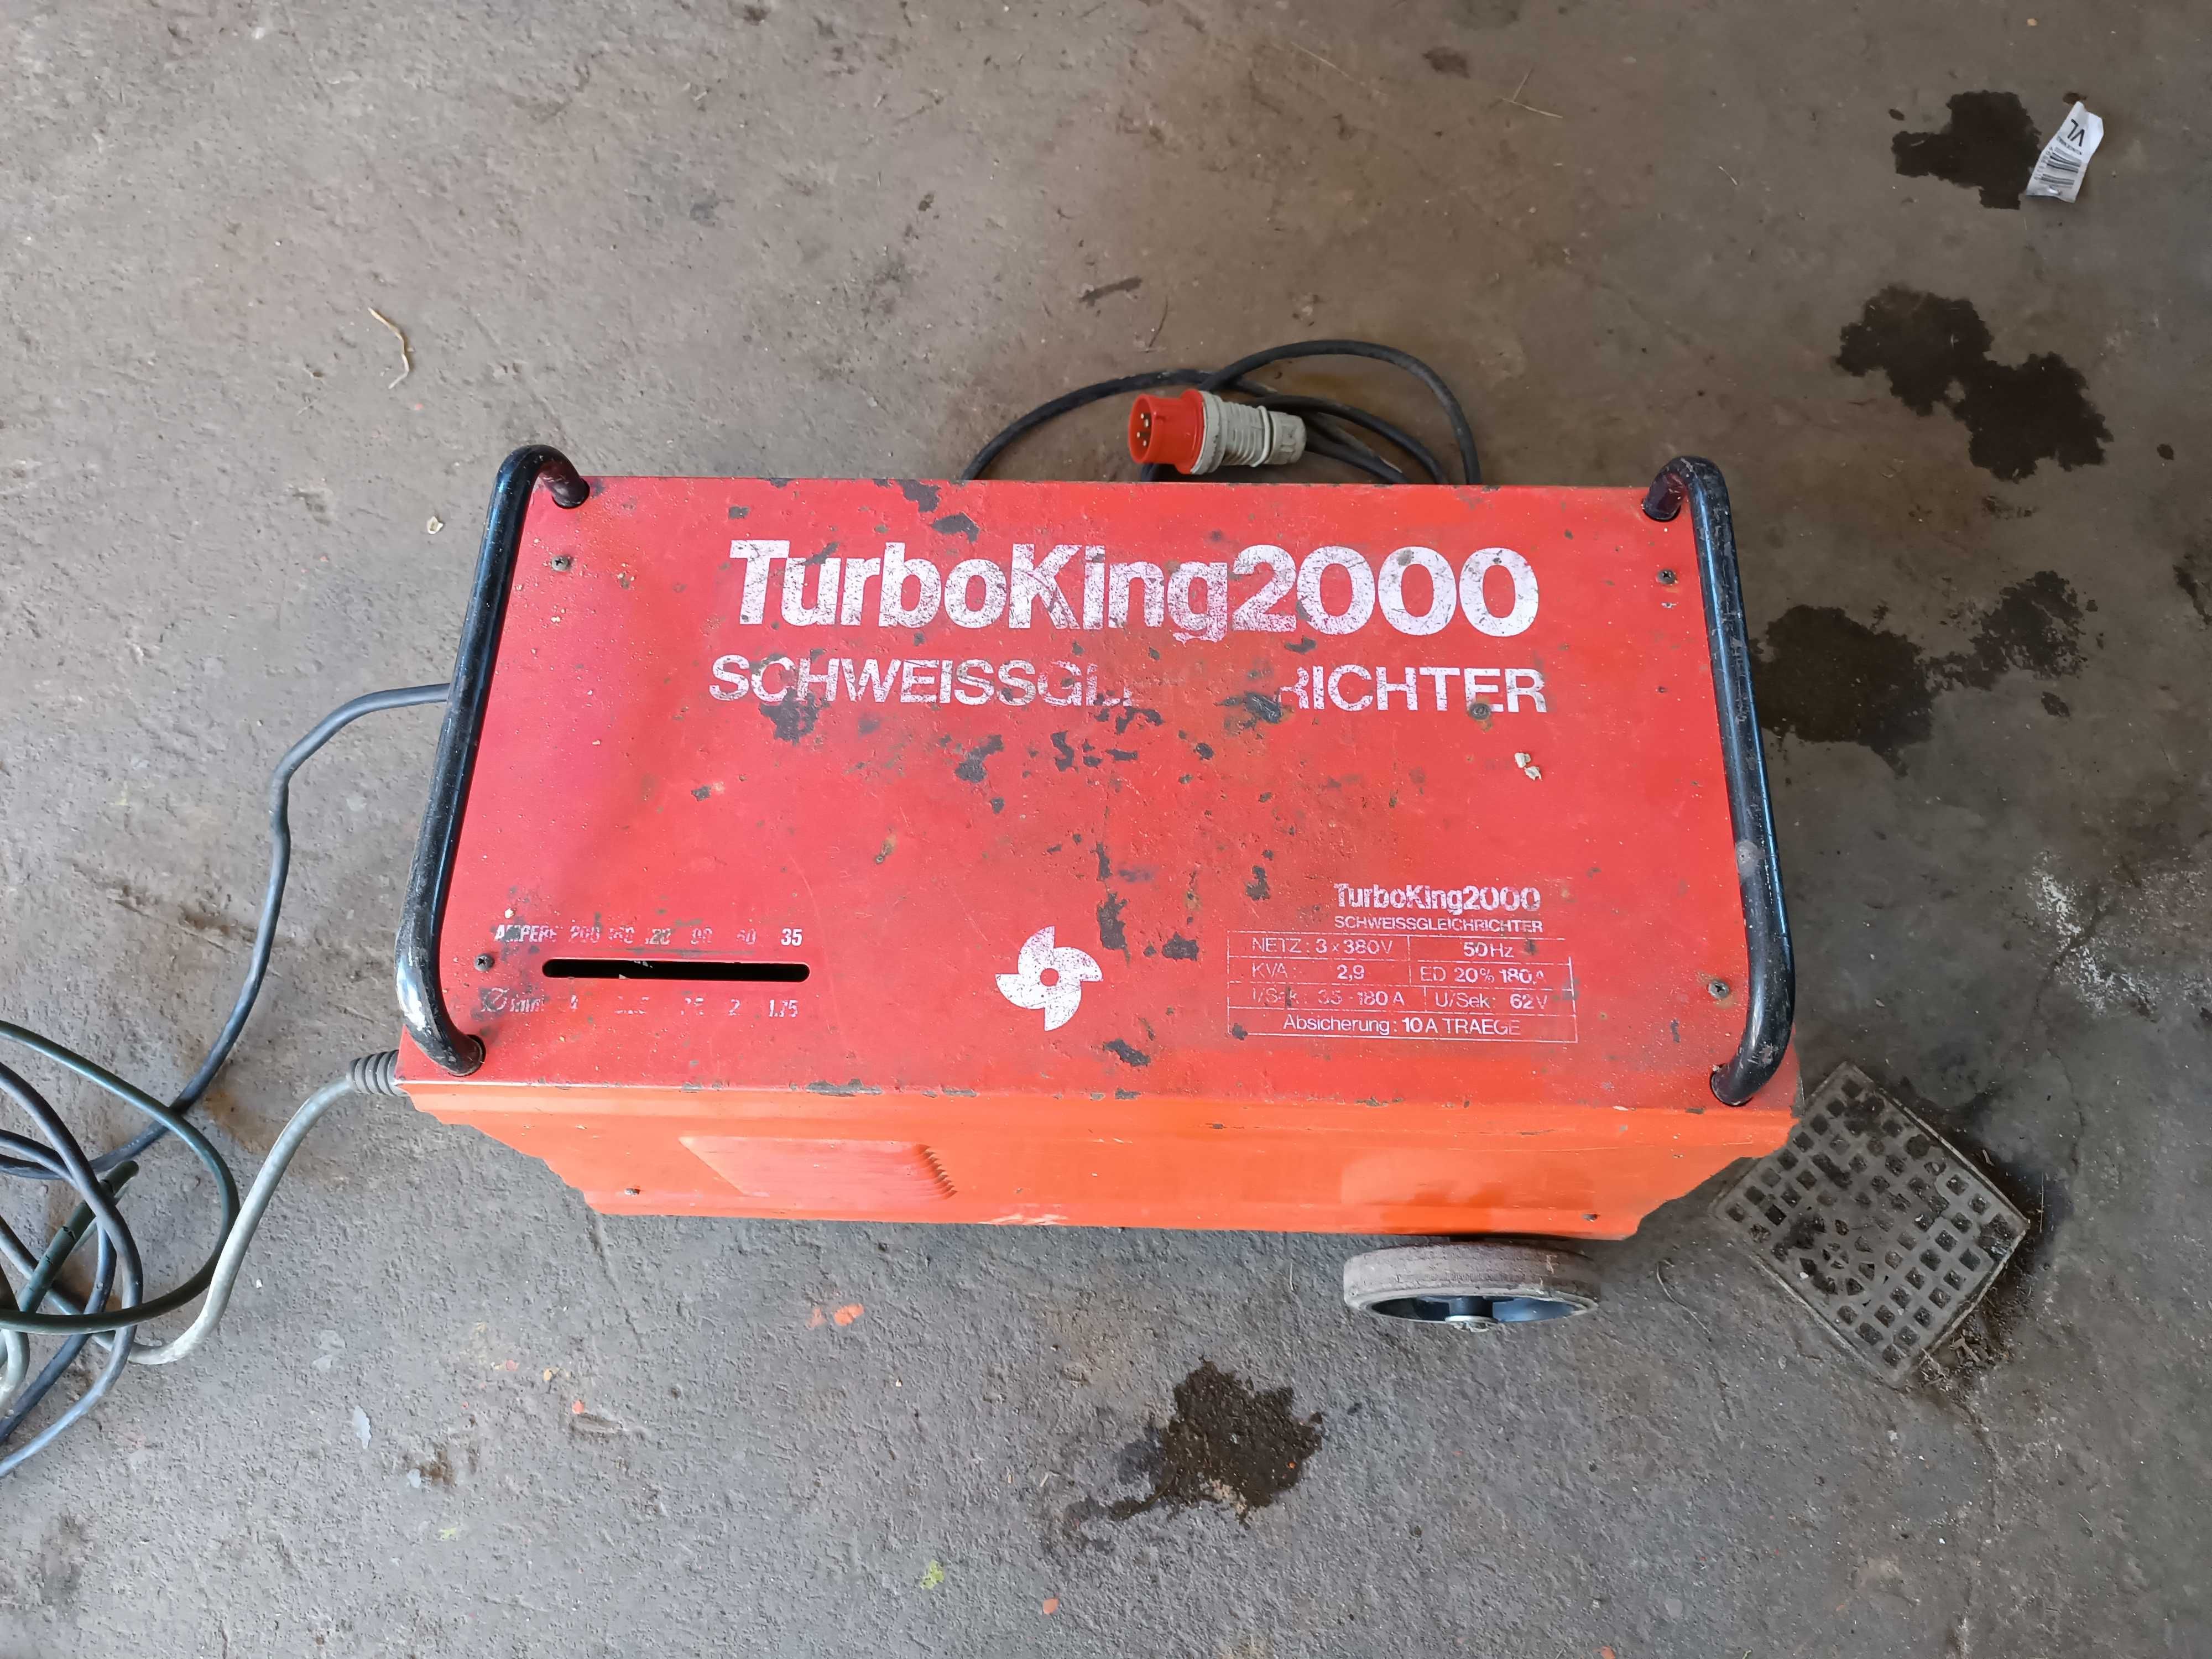 Spawarka turboking 2000